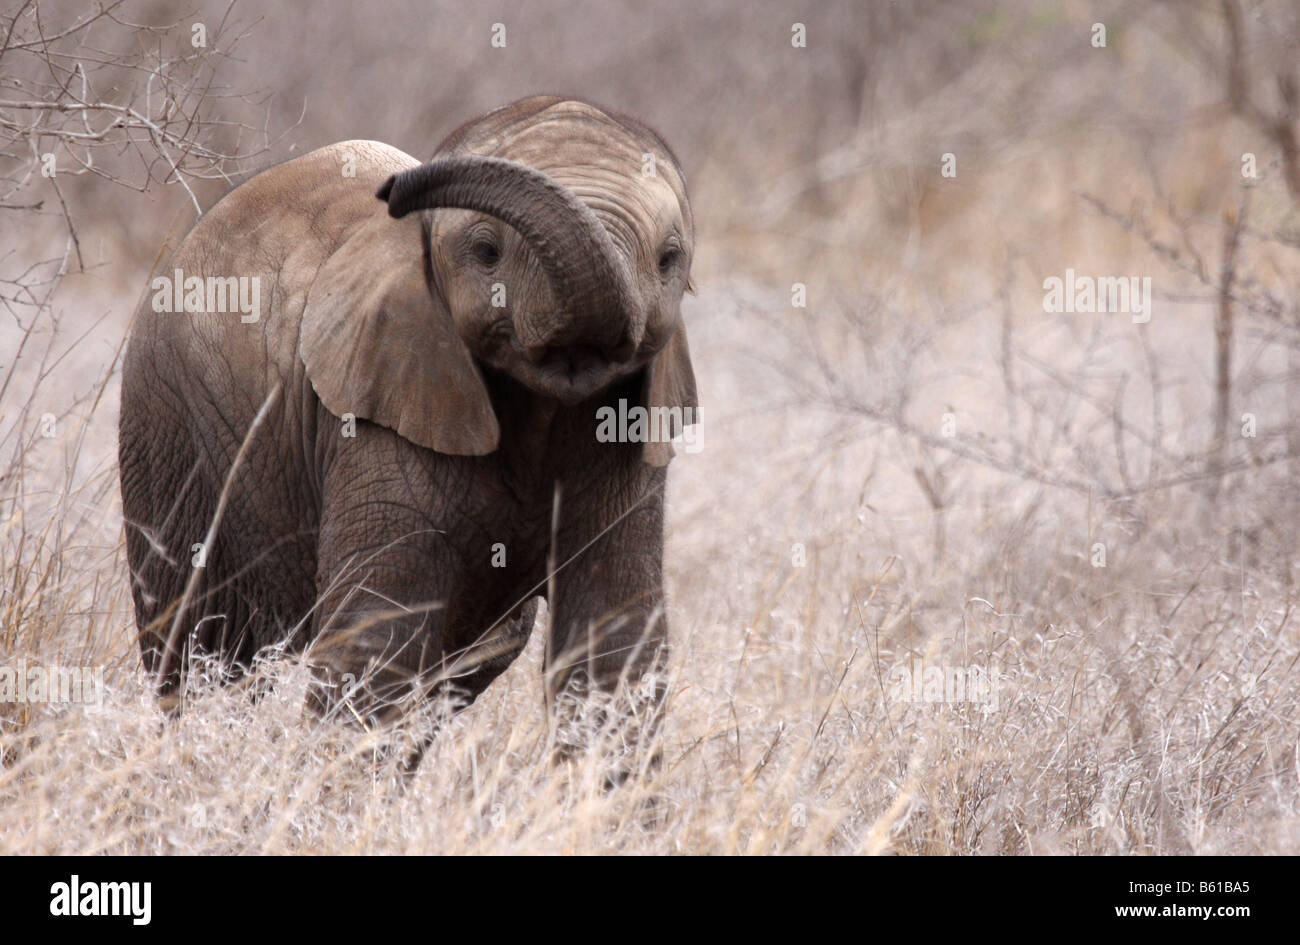 Afrikanischer Elefant Loxodonta Africana einzelne Jugendliche mit Stamm angehoben Stockfoto